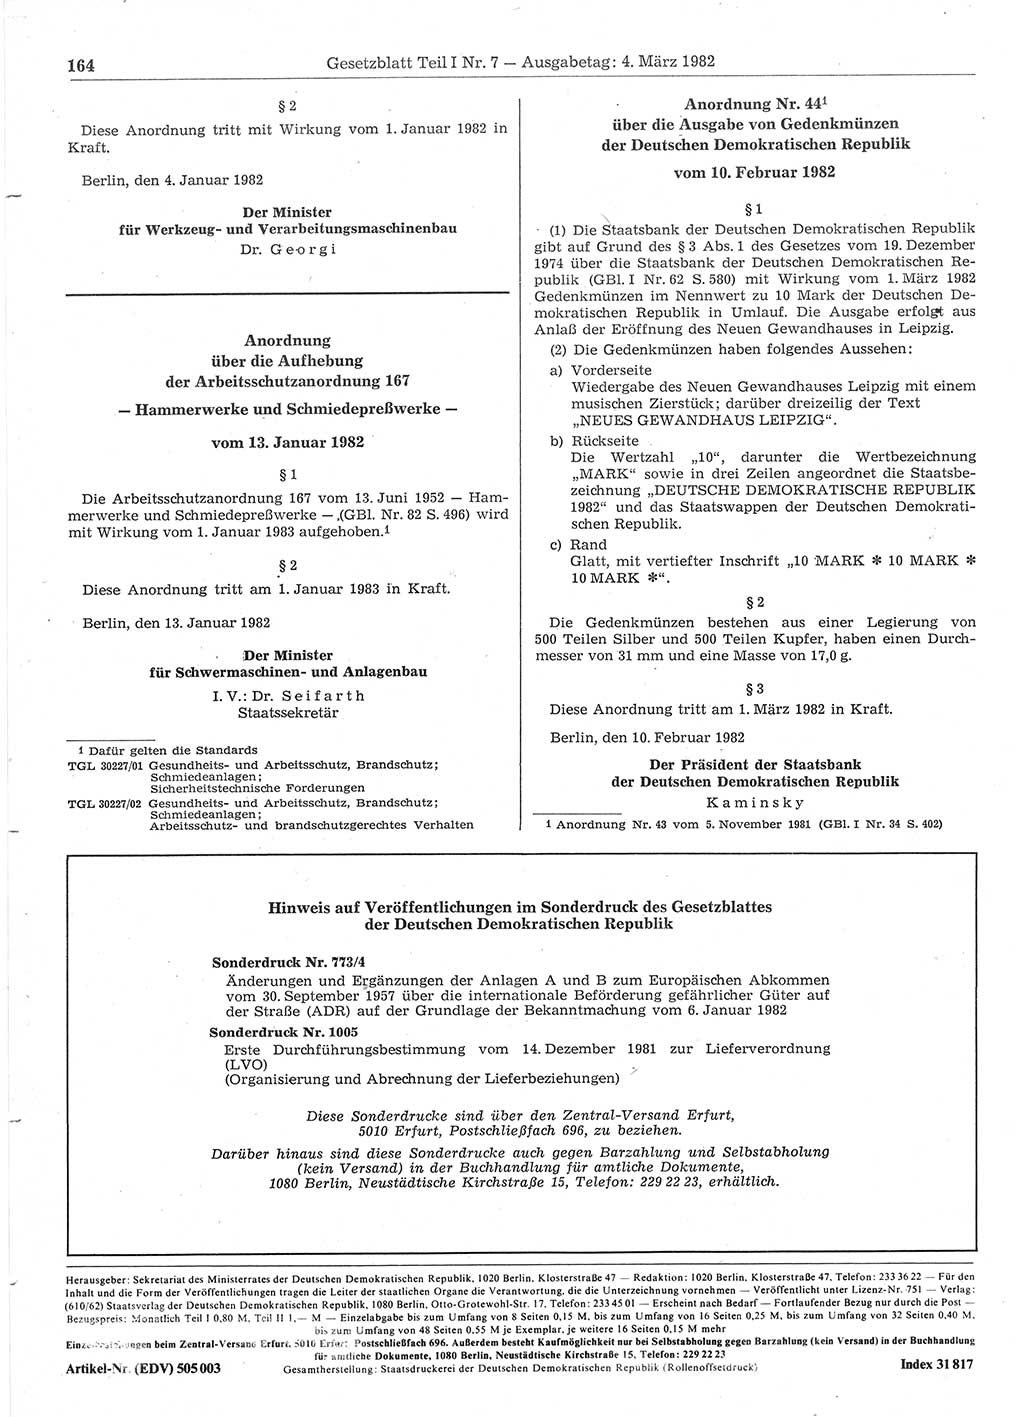 Gesetzblatt (GBl.) der Deutschen Demokratischen Republik (DDR) Teil Ⅰ 1982, Seite 164 (GBl. DDR Ⅰ 1982, S. 164)